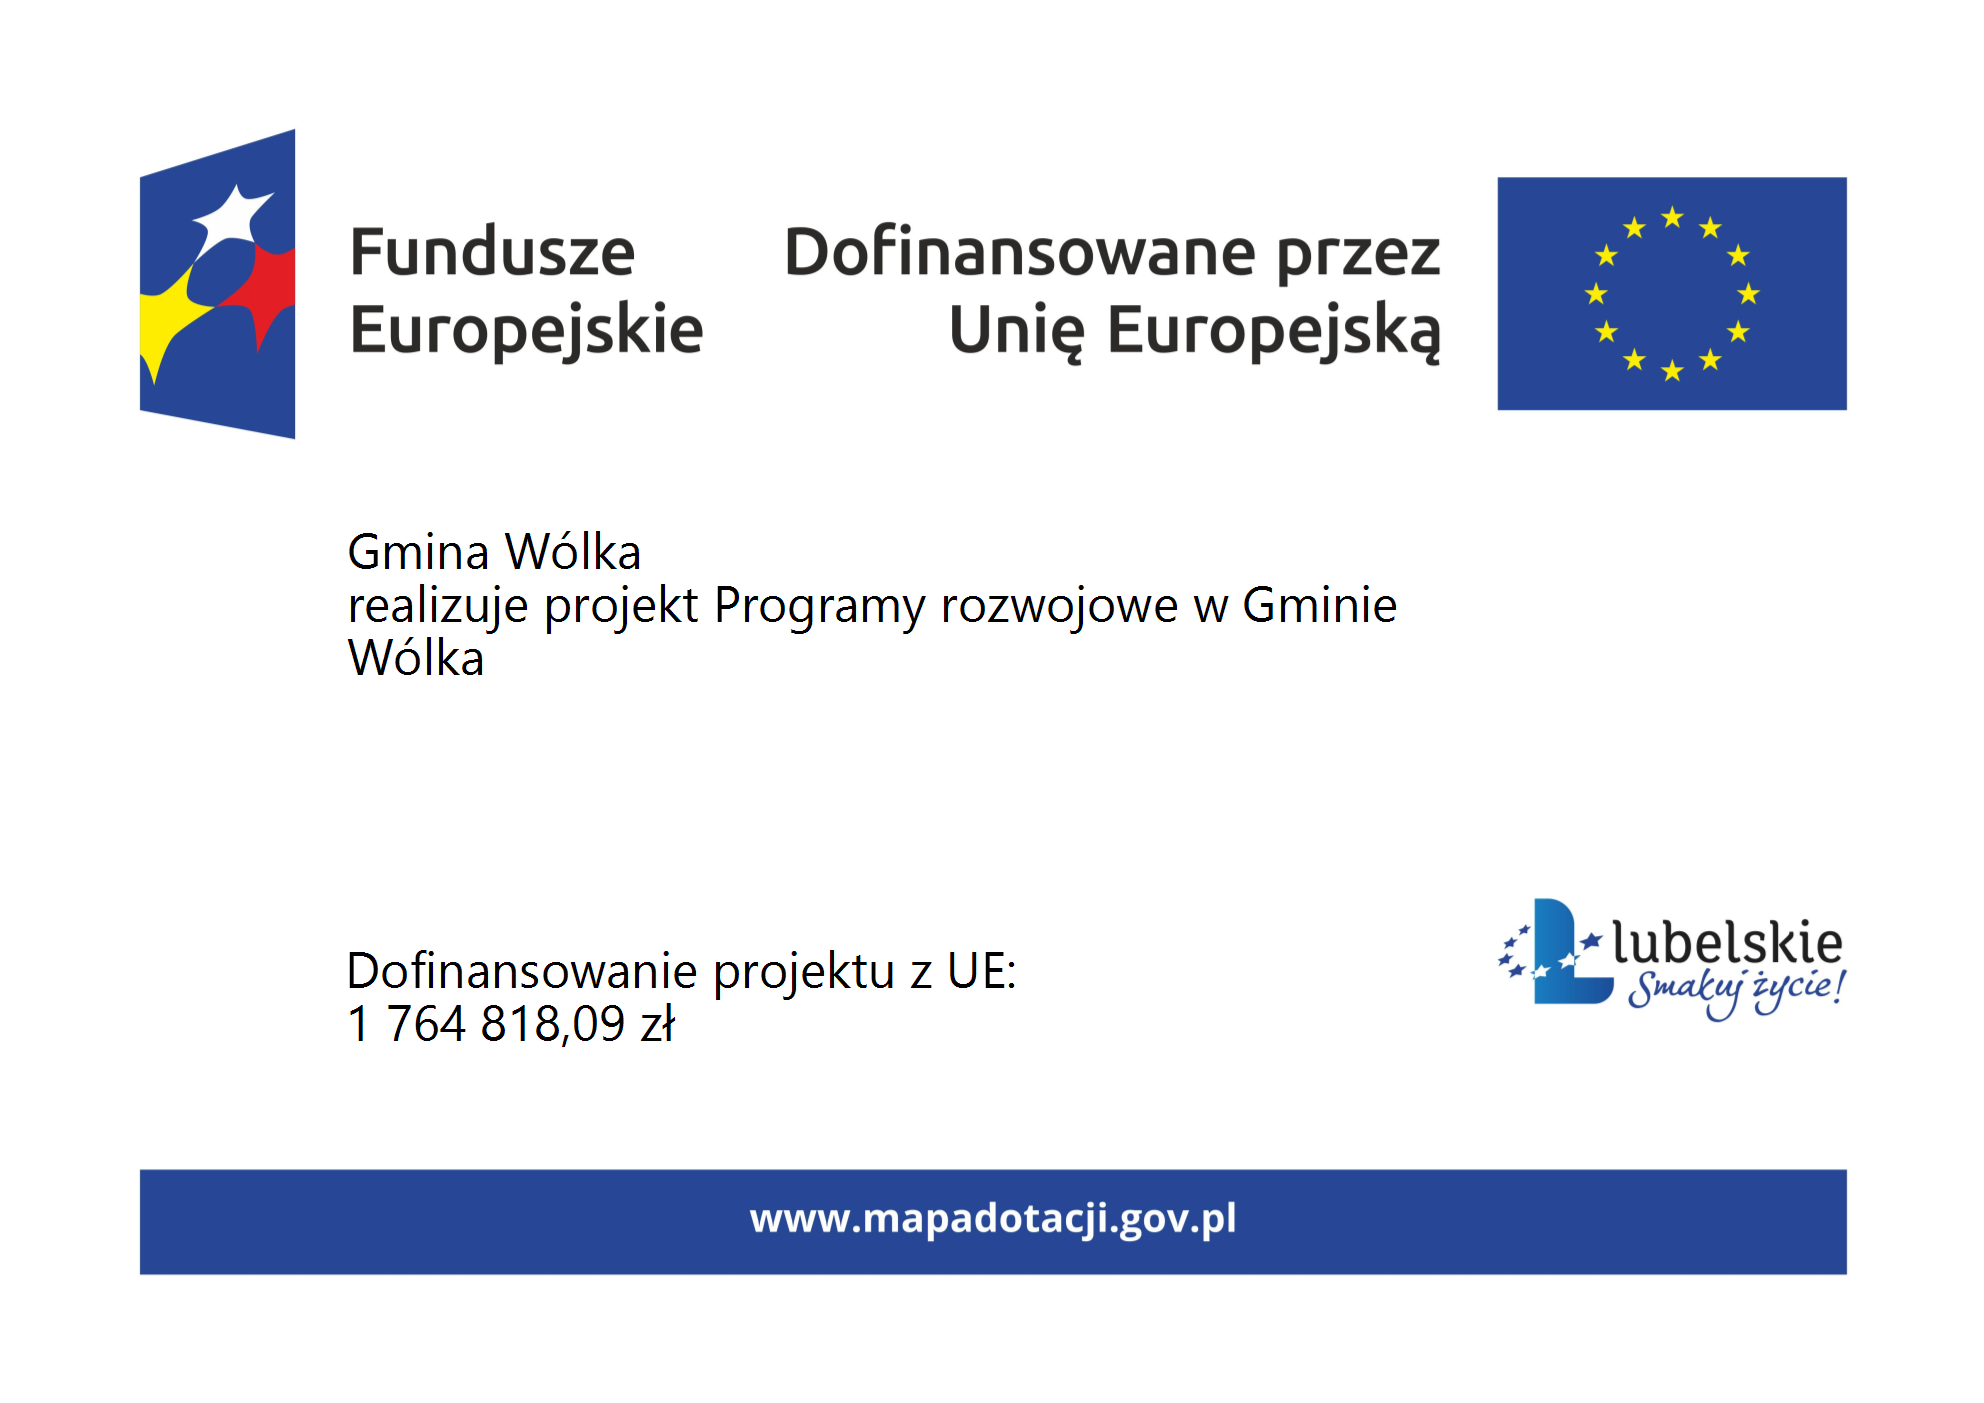 Zdjęcie przedstawia informacyjną grafikę z logotypami Funduszy Europejskich i Unii Europejskiej, wraz z informacją o dofinansowaniu projektu przez UE dla Gminy Wólka oraz kwotą dofinansowania.